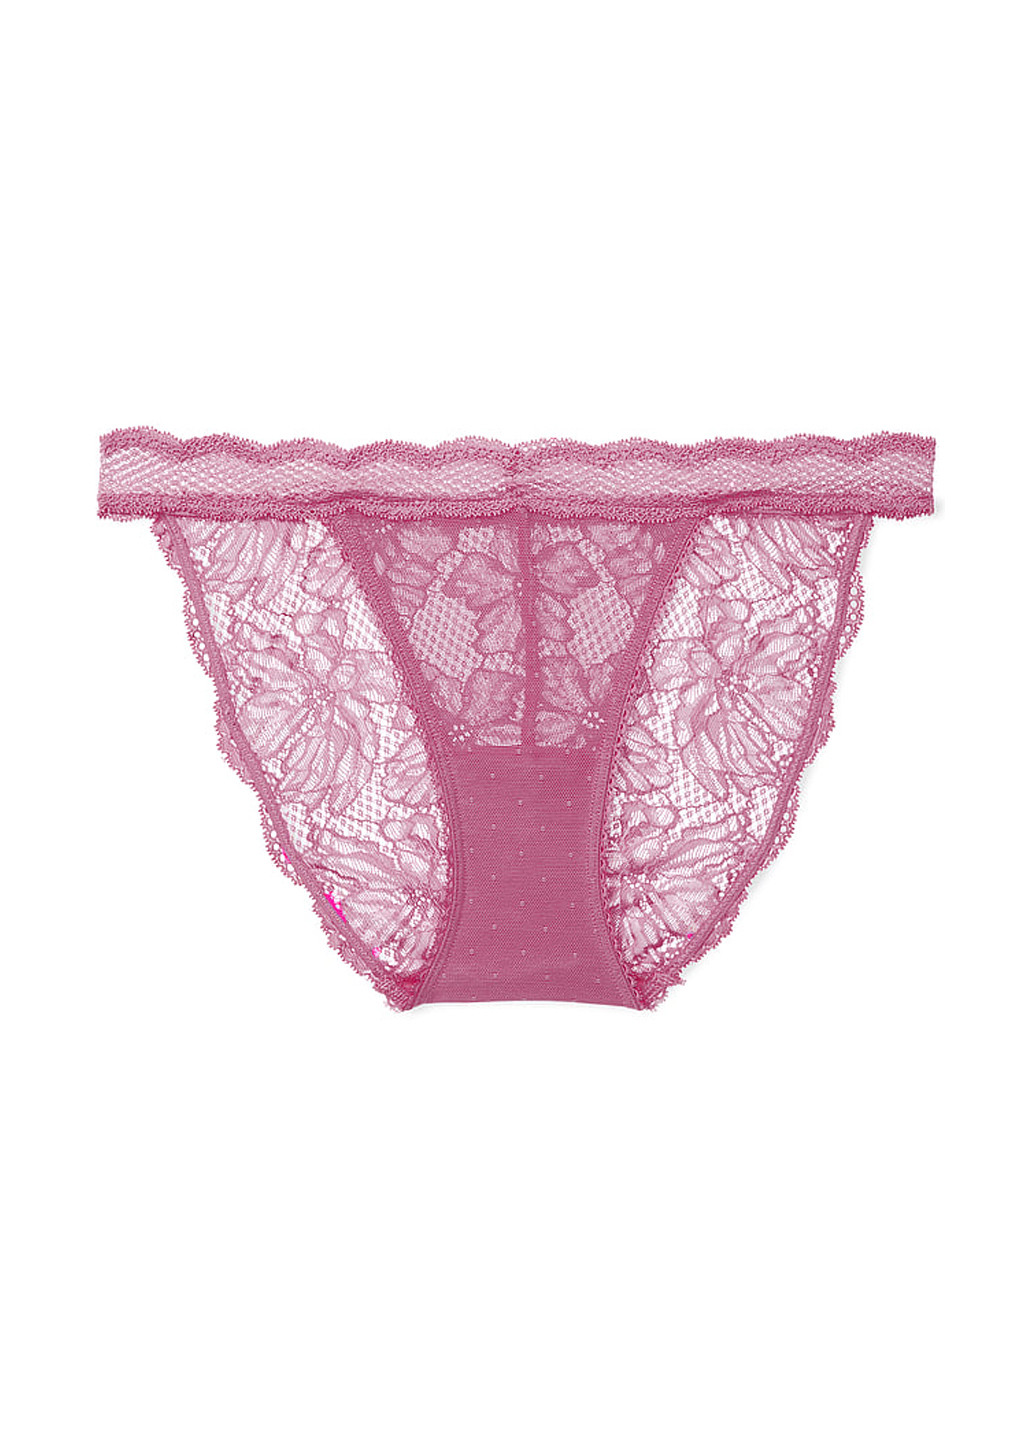 Розовый демисезонный комплект (бюстгальтер, трусики) Victoria's Secret